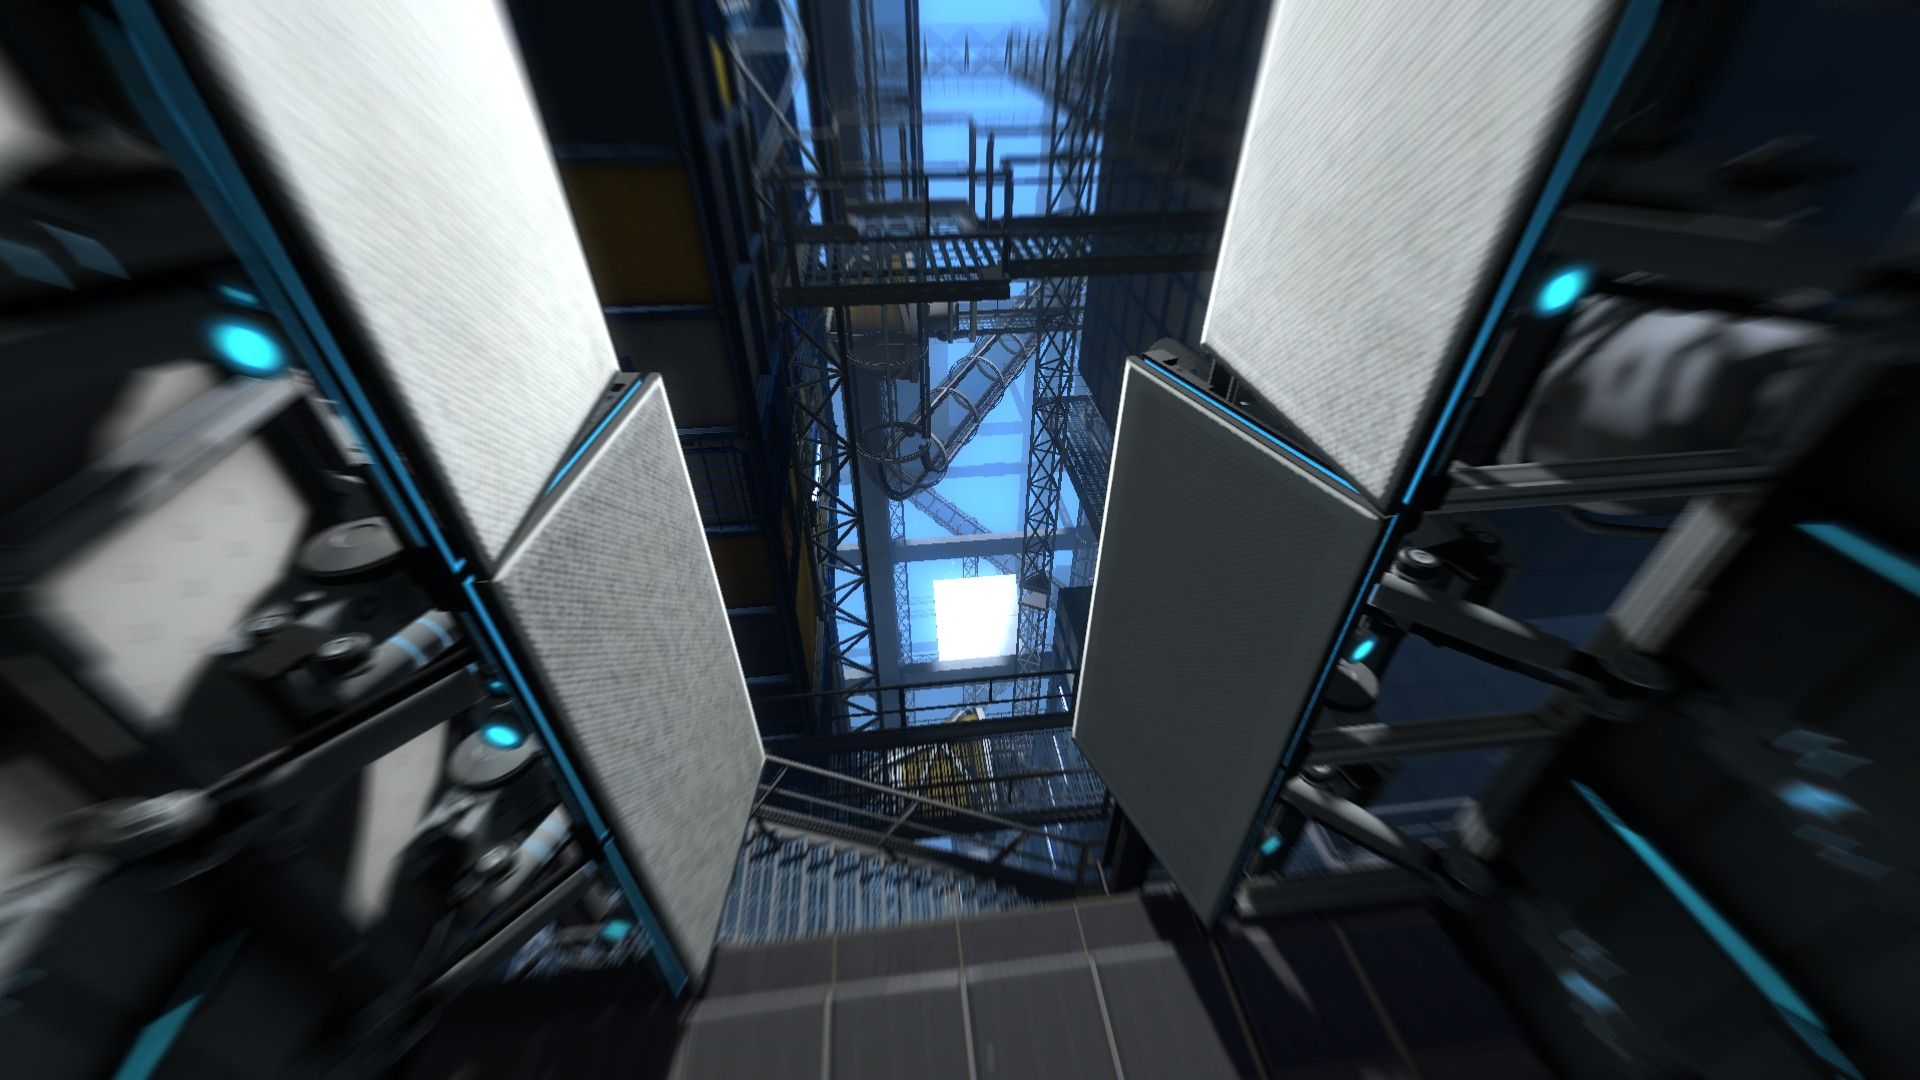 G1 - Conteúdo extra de 'Portal 2' para PC e Mac permitirá a criação de fases  - notícias em Tecnologia e Games